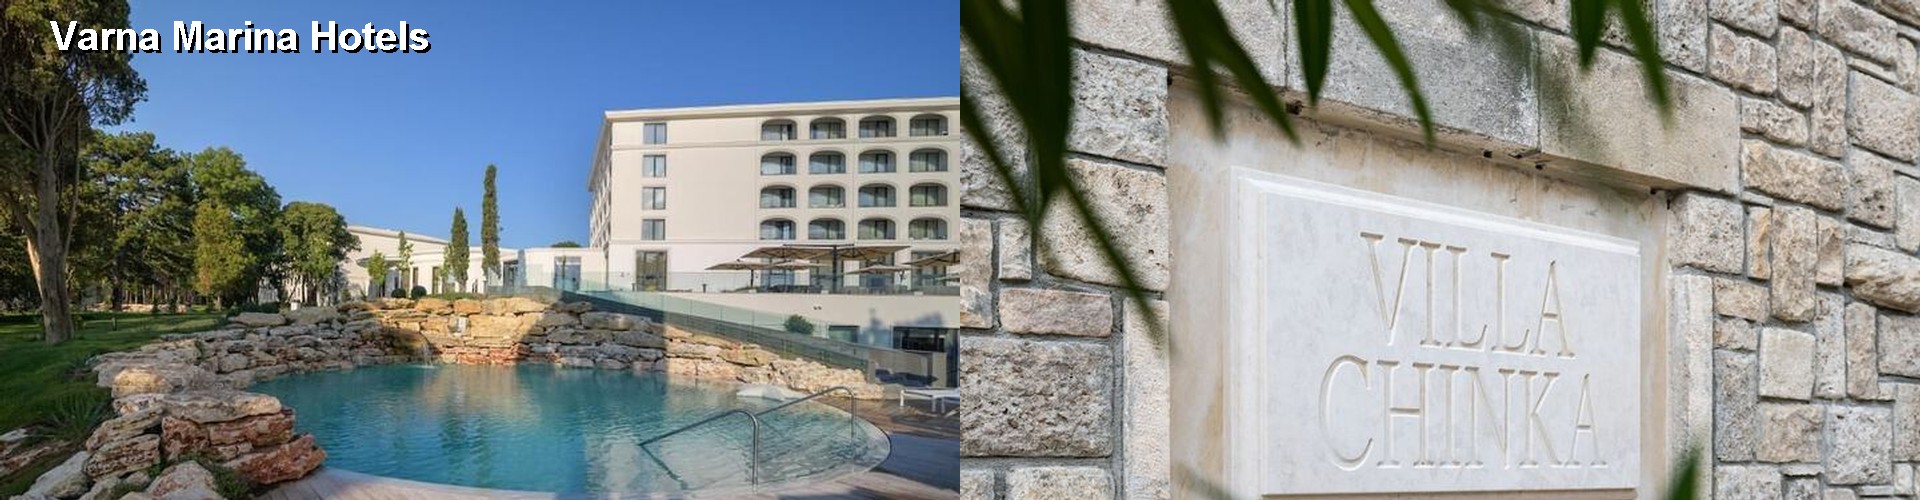 5 Best Hotels near Varna Marina